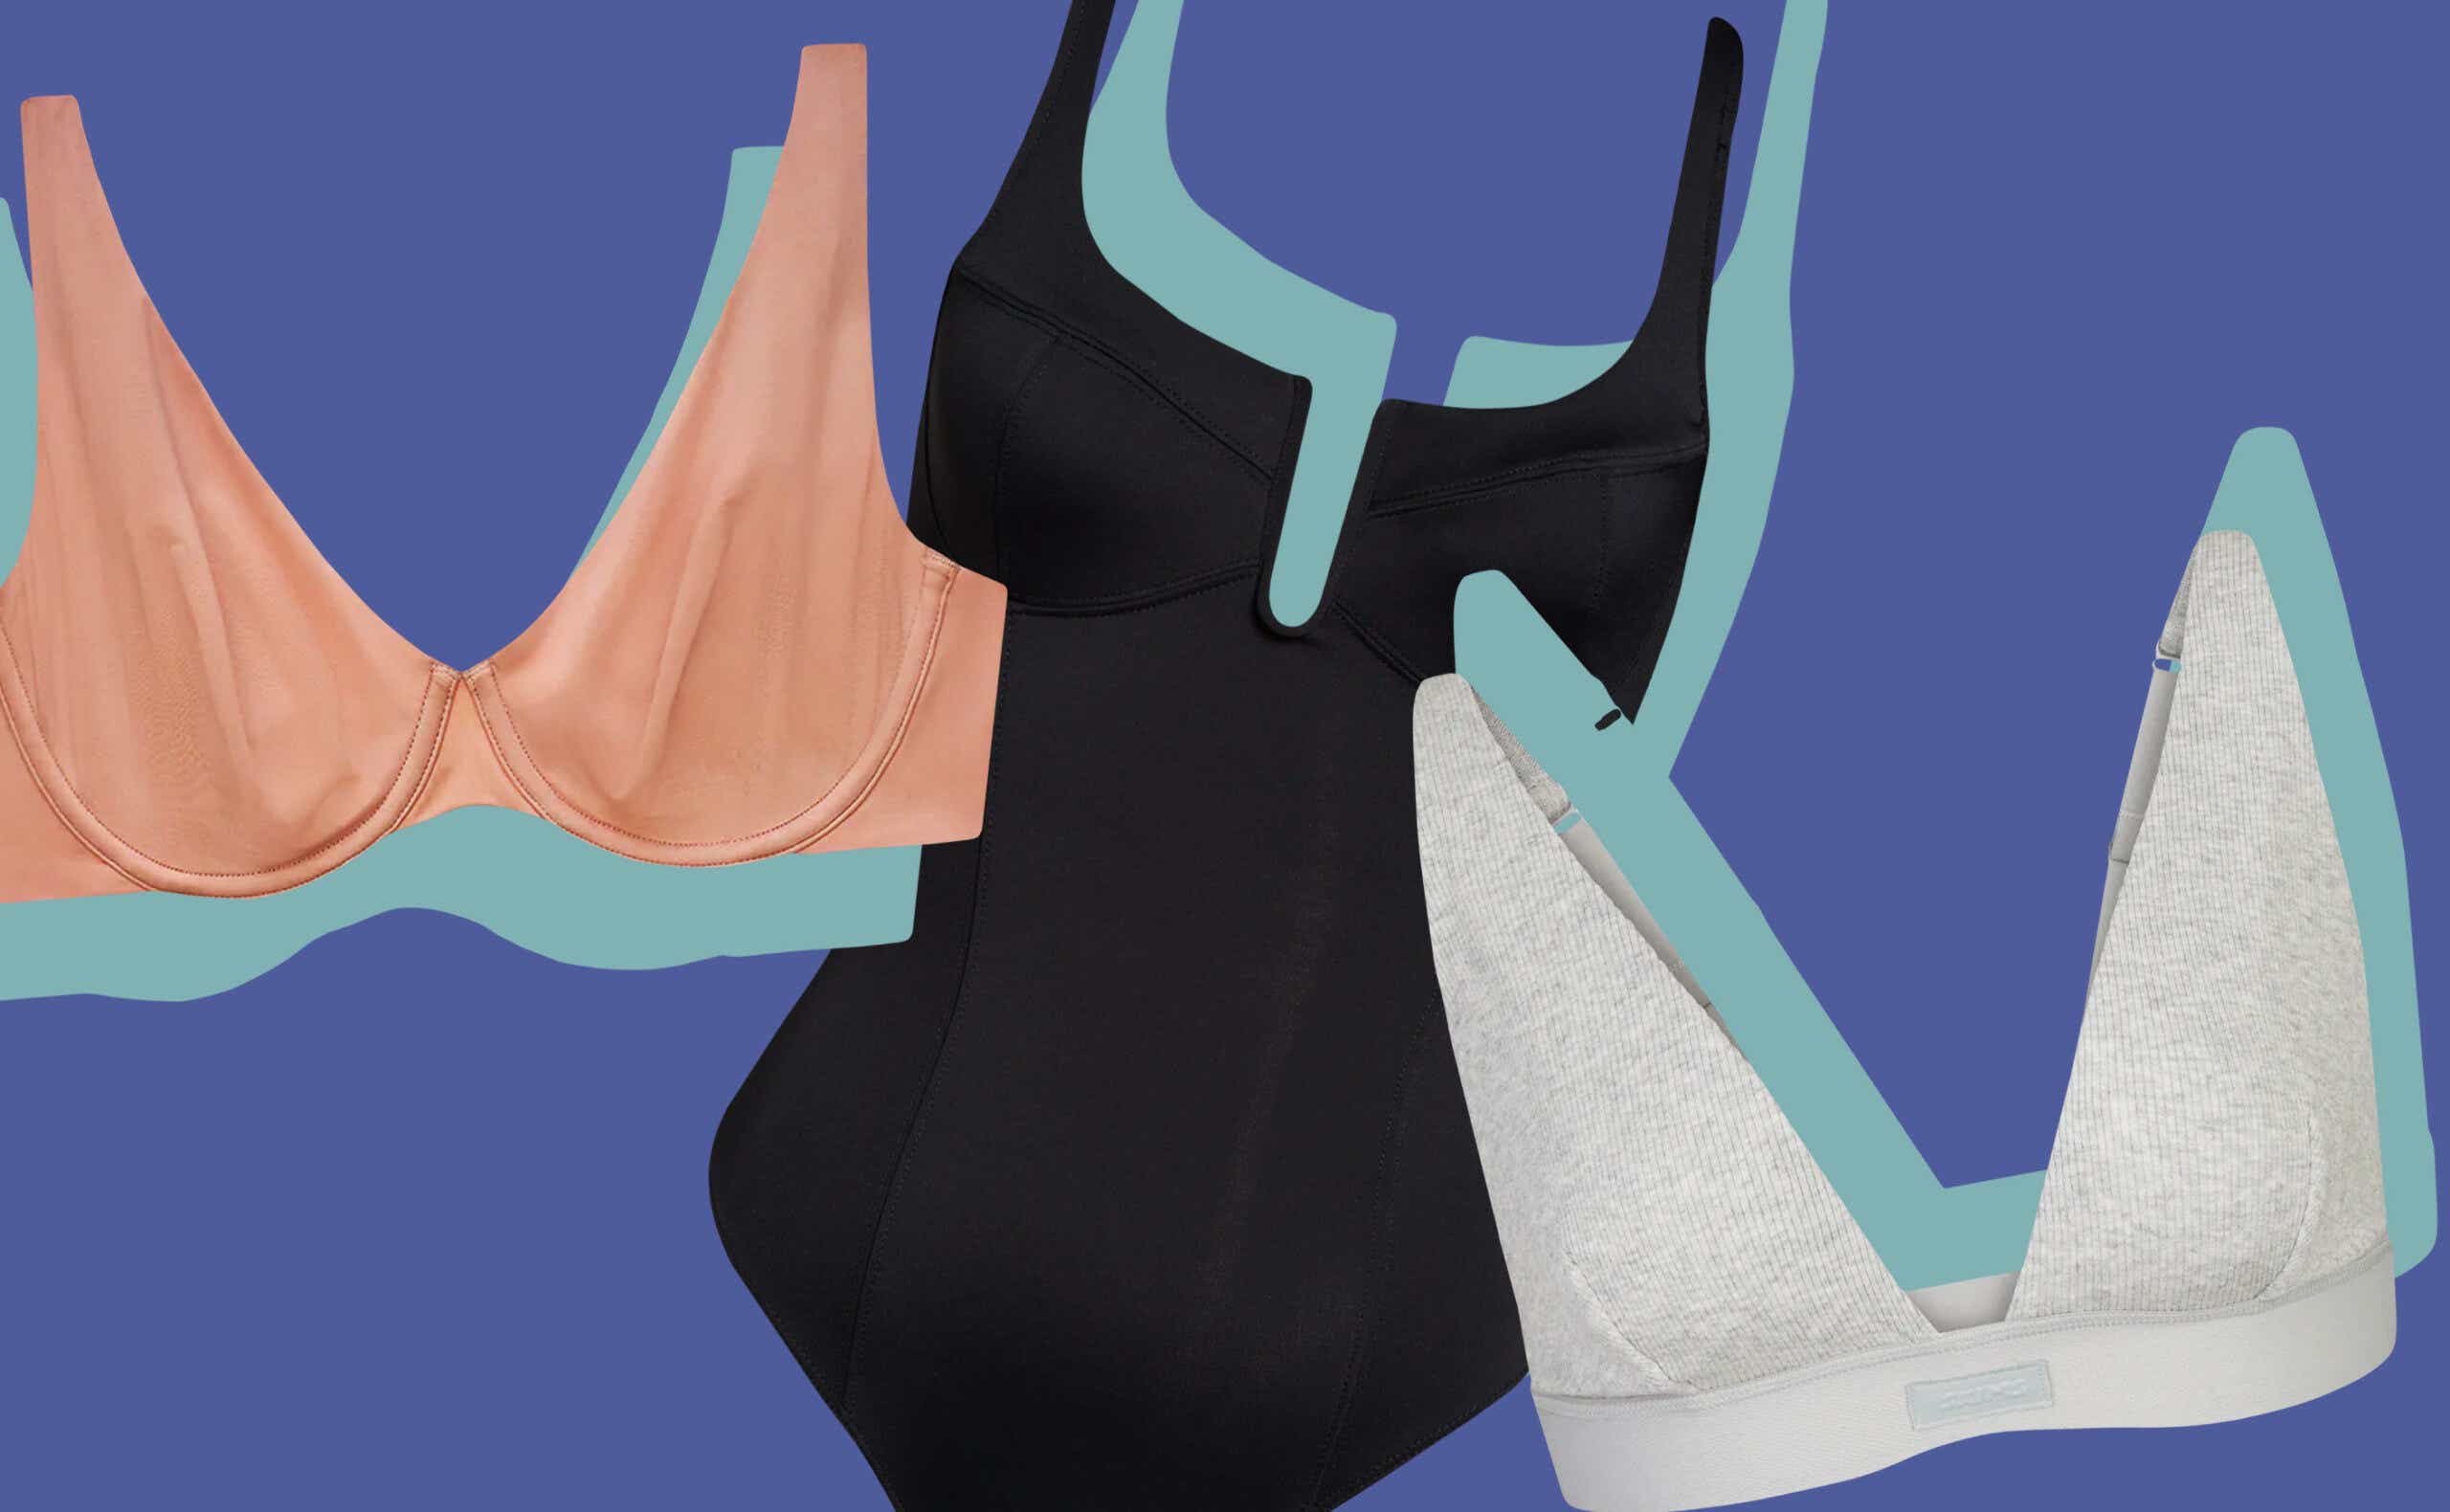 Skin-friendly Cotton Front Button Bra Women's Wireless Underwear Breathable  With